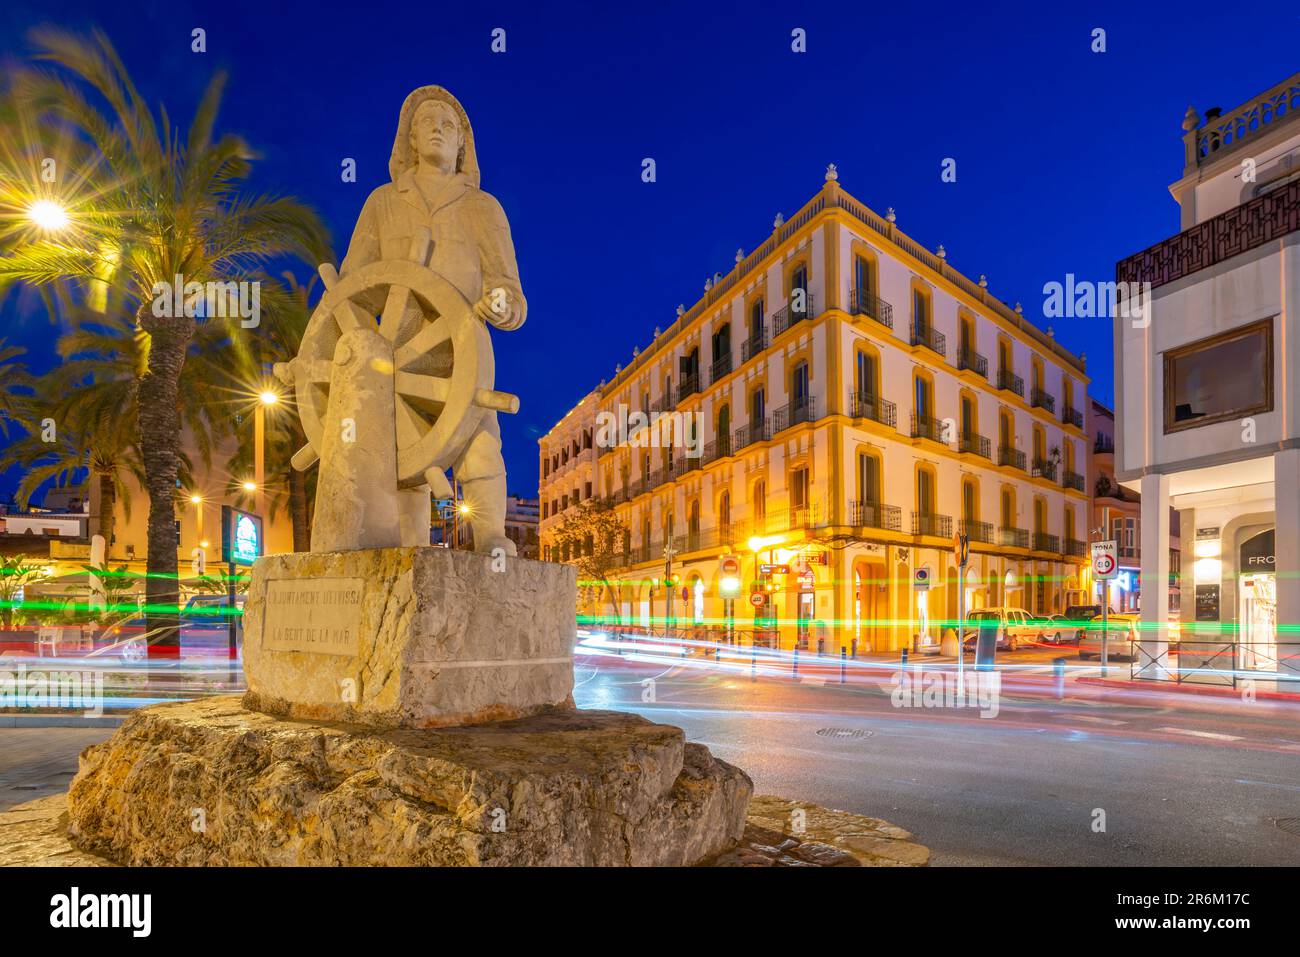 Vue sur le Monument a la Gent de la Mar près du port au crépuscule, site classé au patrimoine mondial de l'UNESCO, ville d'Ibiza, Eivissa, Iles Baléares, Espagne, Méditerranée Banque D'Images